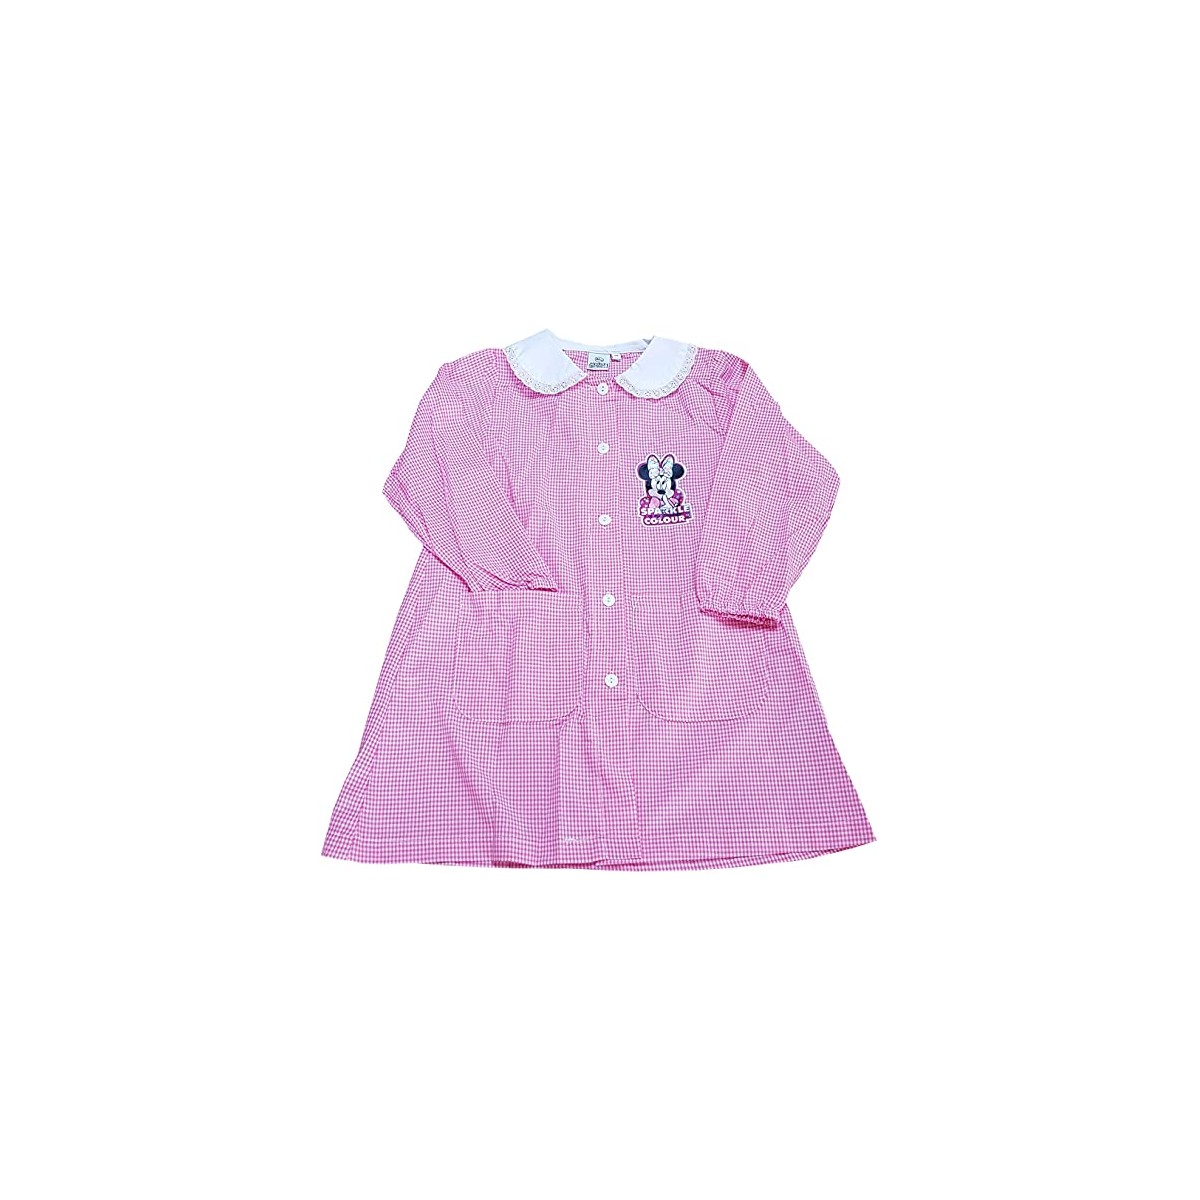 Grembiule scuola materna Minnie Disney, per bambine, colore rosa